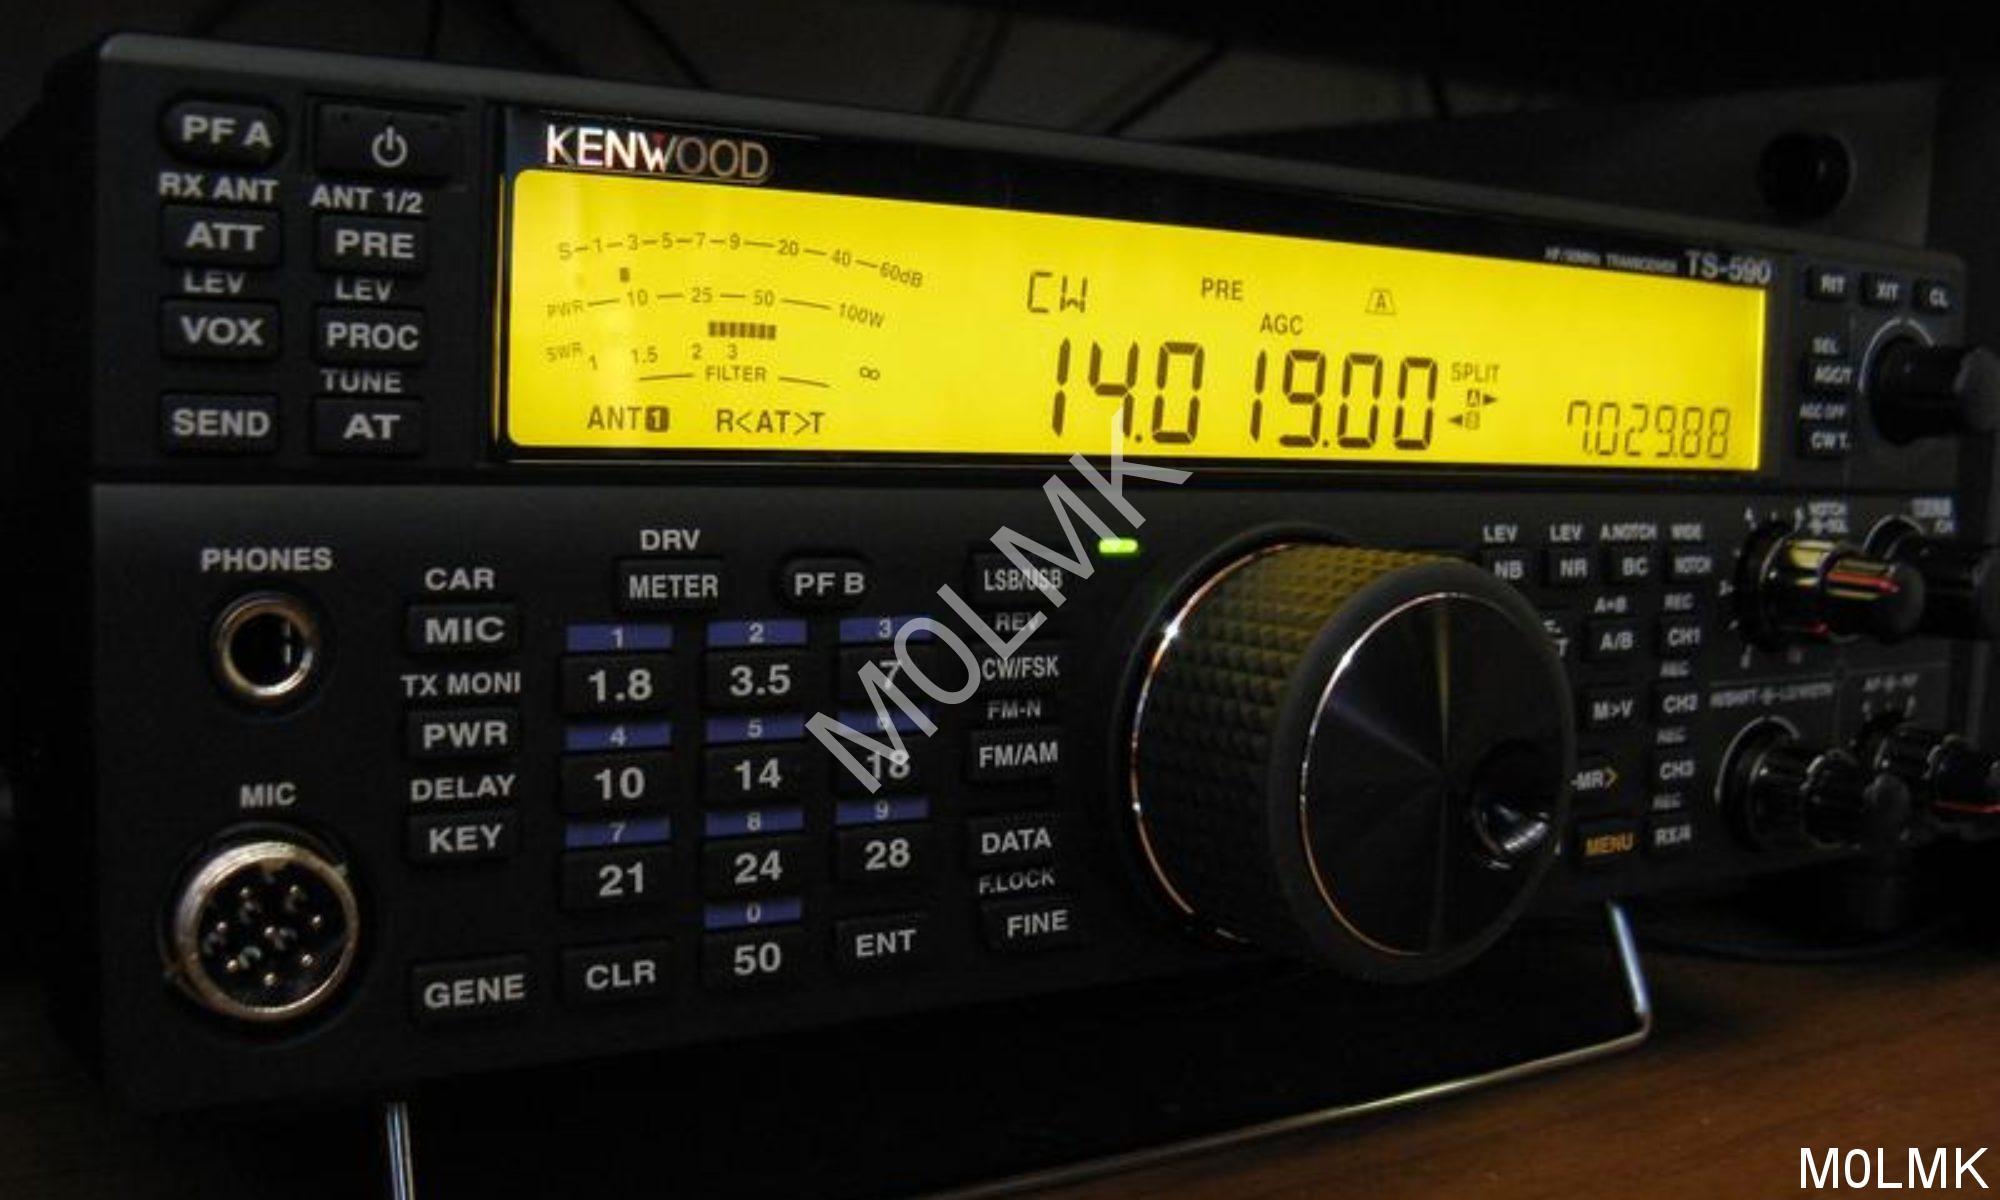 kenwood amateur radio parts east coast